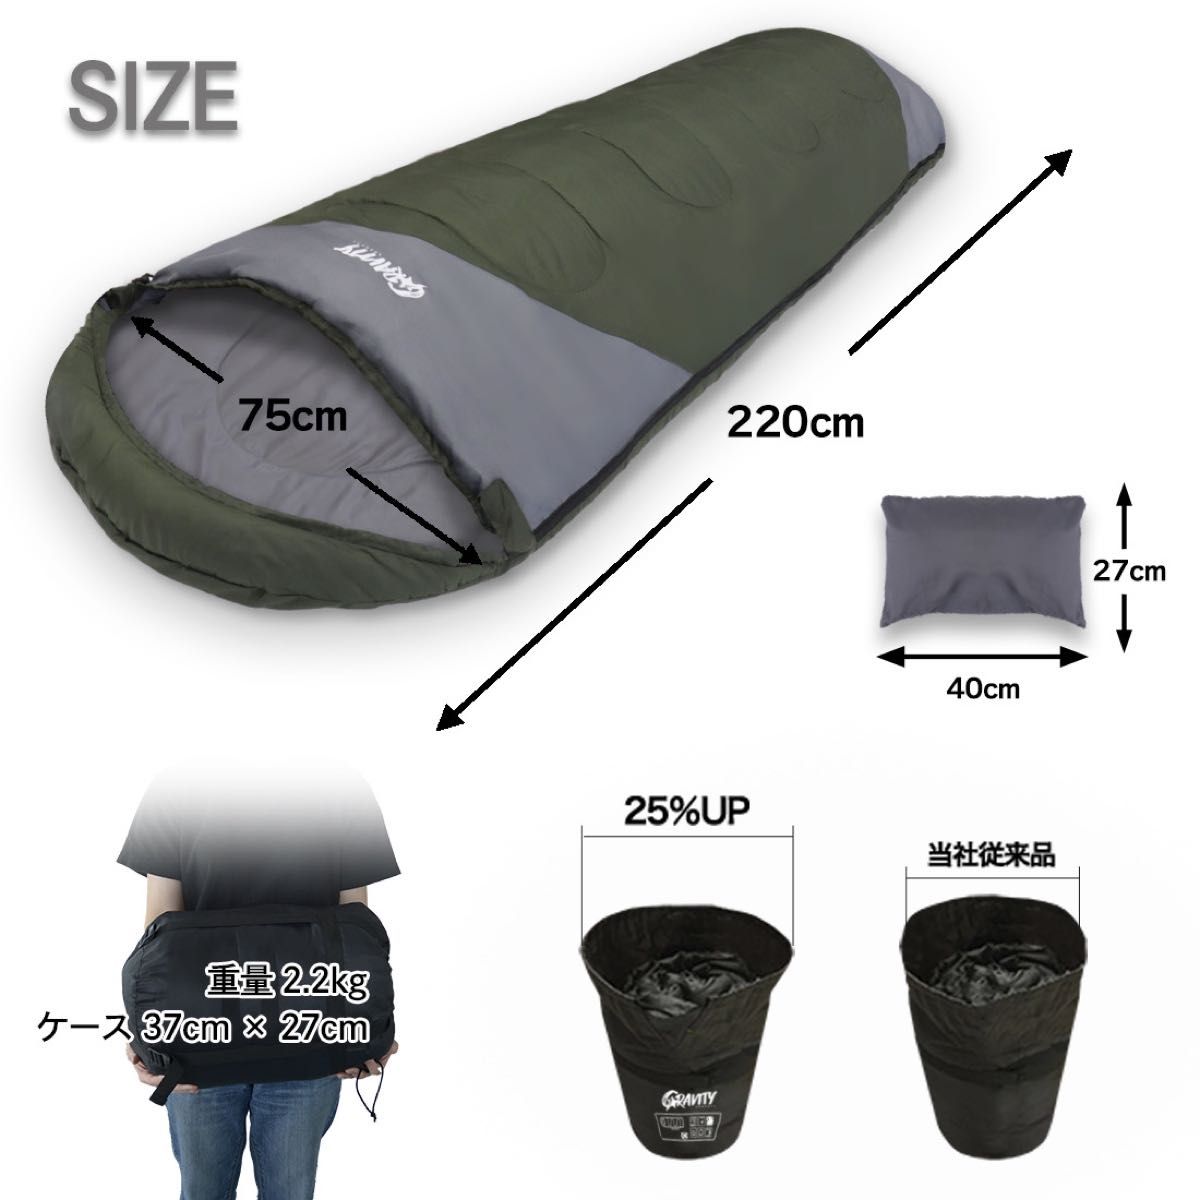 新品 寝袋 シュラフ 枕付き 丸洗い可能 防災 旅行 車中泊 アウトドア キャンプ 来客用 210T コヨーテ